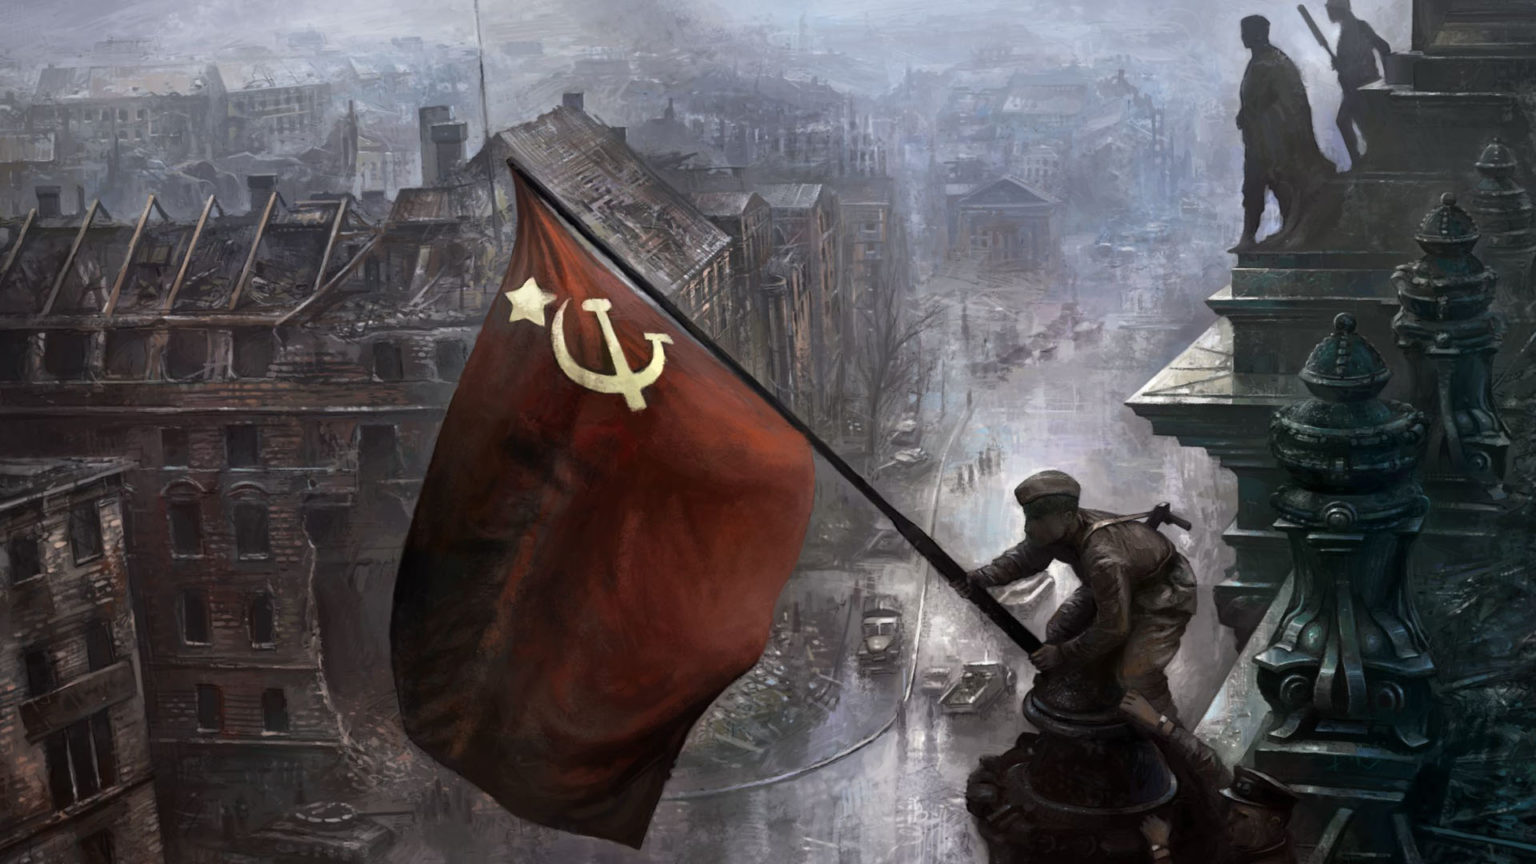 9th may soviet flag